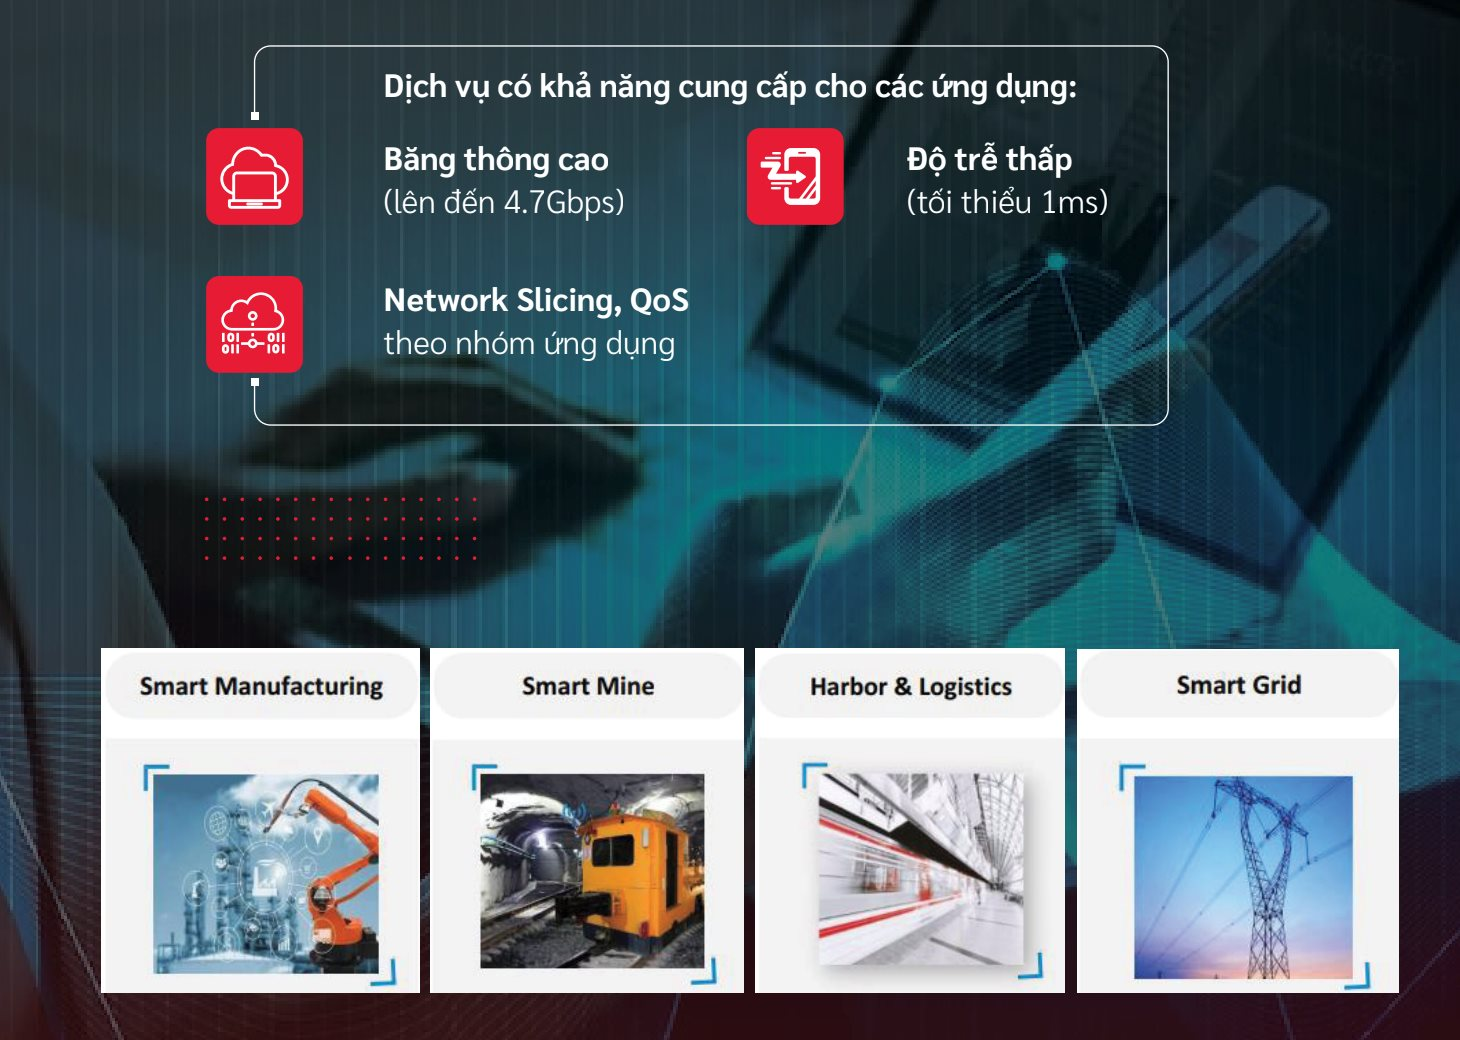 Nhà máy thông minh đầu tiên ứng mạng 5G dùng riêng của Việt Nam - cú hích cho Hải Phòng bứt phá về chuyển đổi số - Ảnh 4.